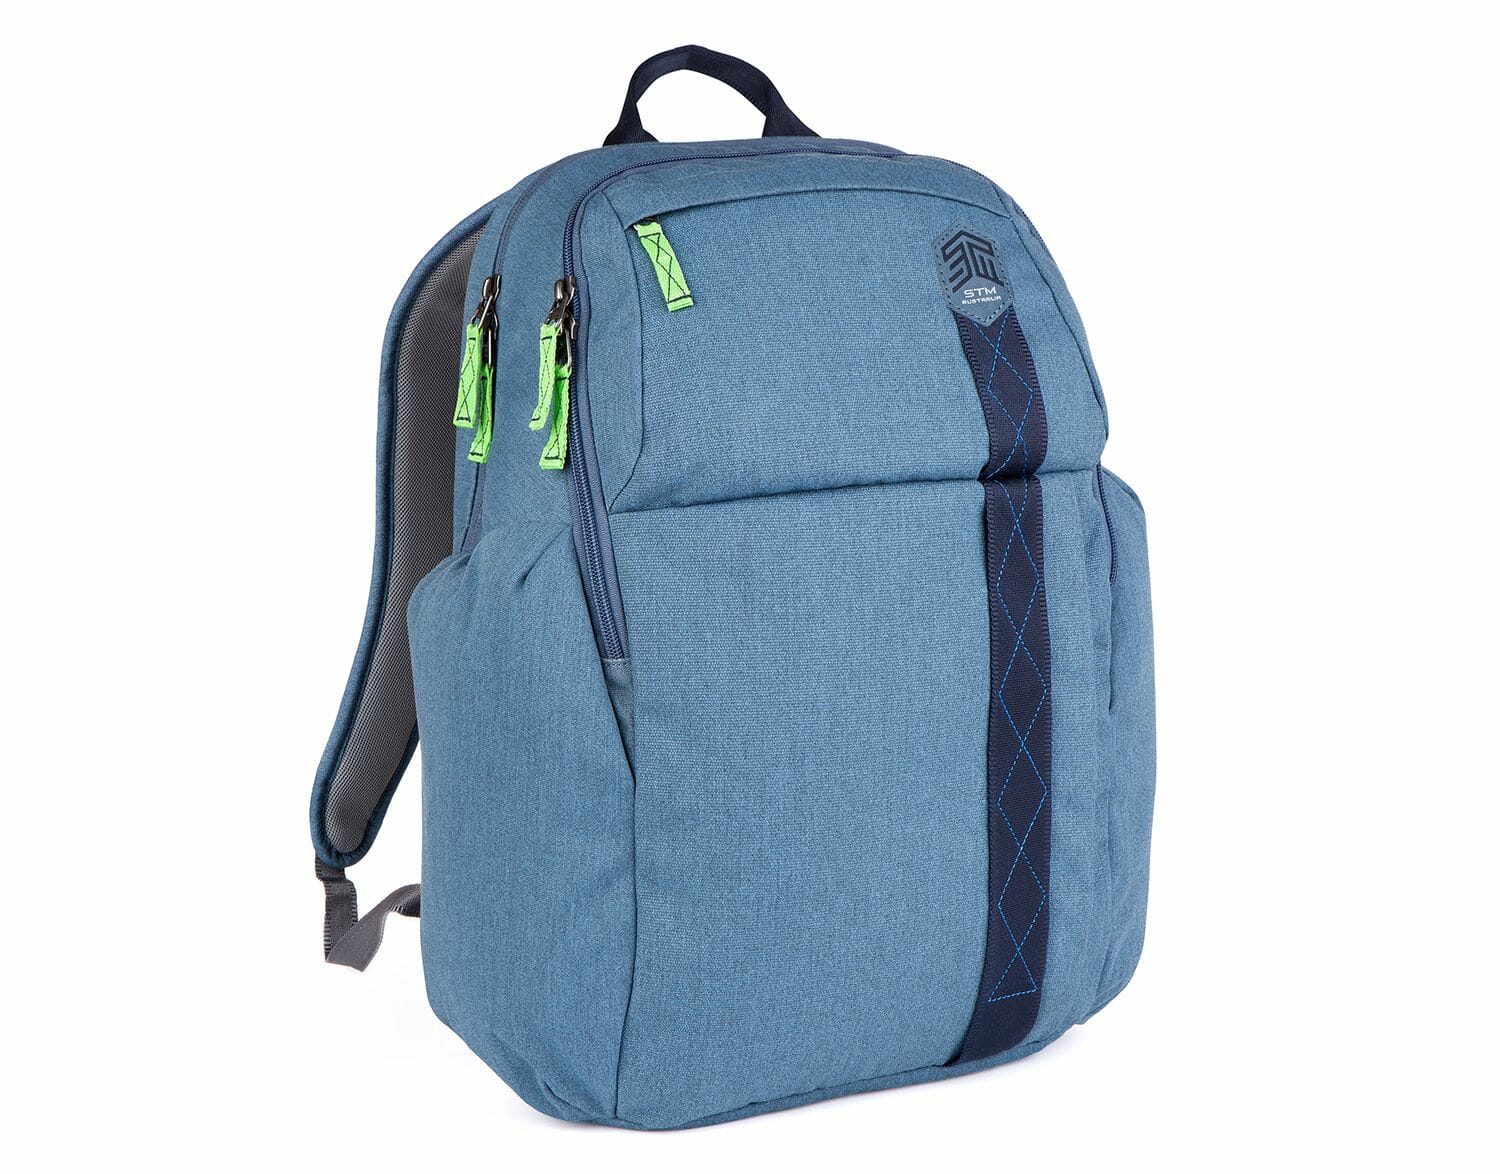 Kings Laptop Backpack | STM Goods USA